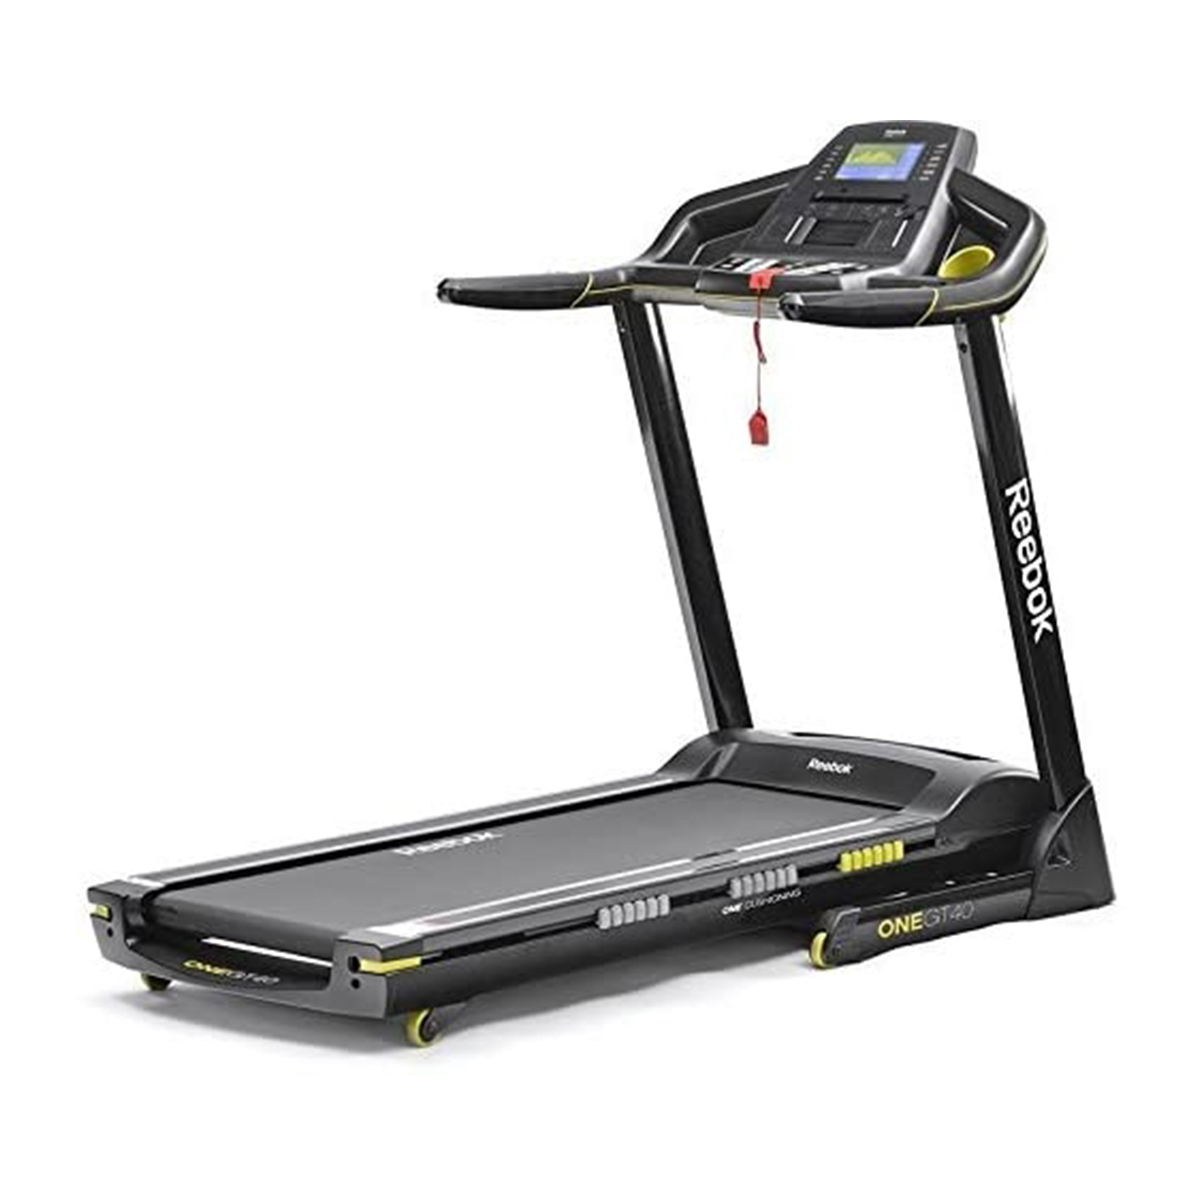 Wakker worden Charles Keasing Savant Buy Reebok Fitness GT40 One Series Treadmill - Black + Bluetooth Online at  Best Price in Oman.